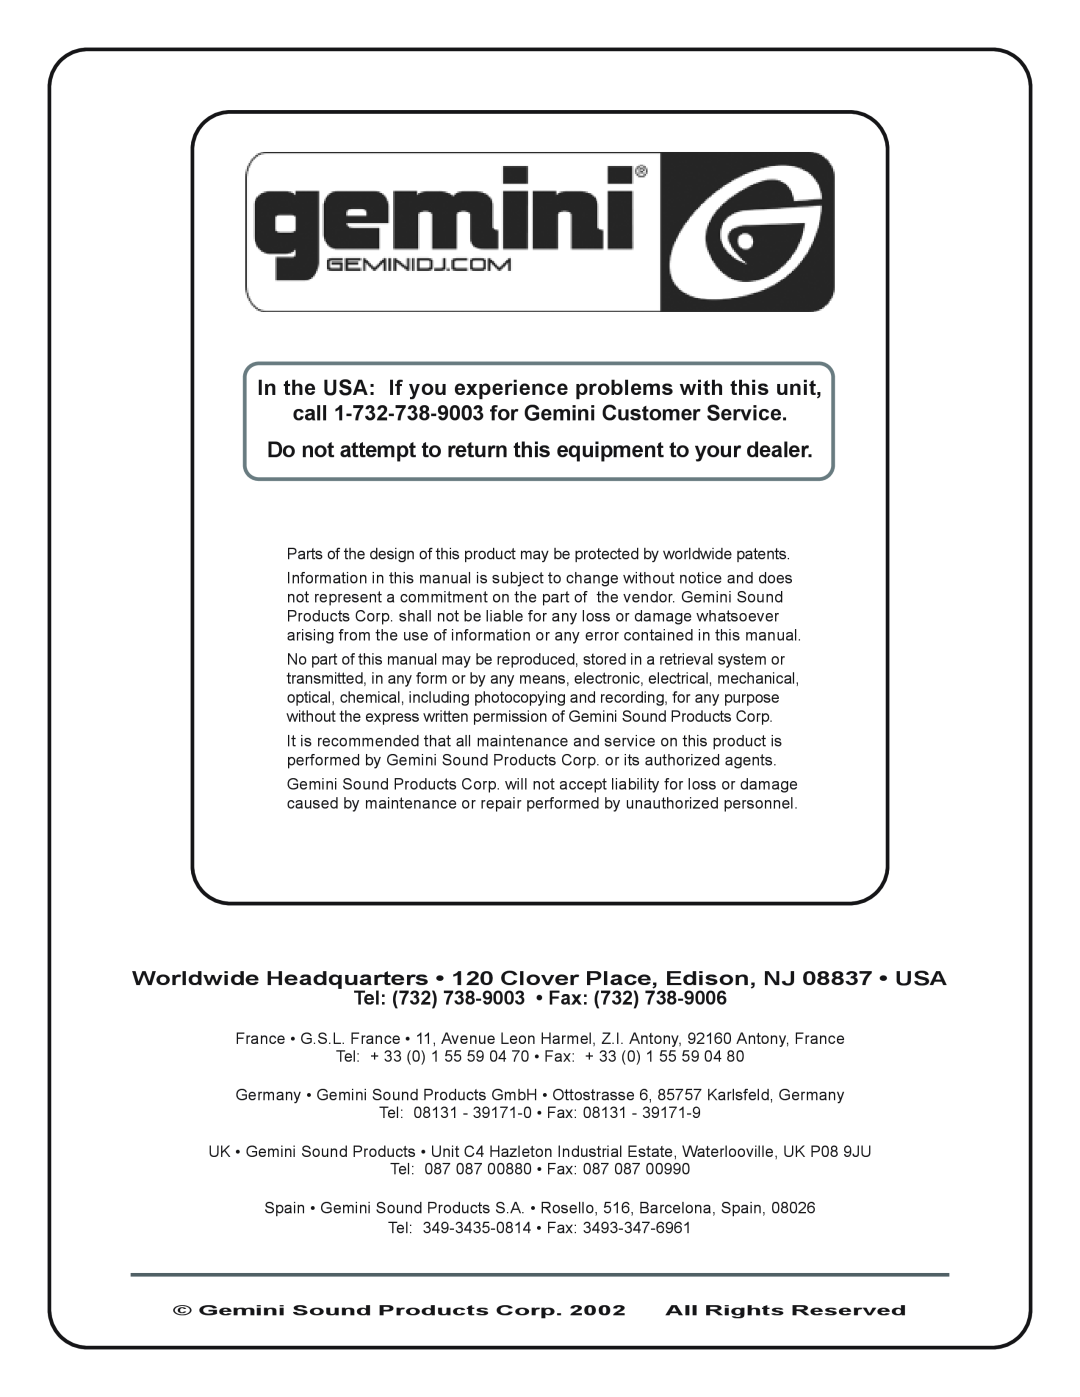 Gemini XL-300 manual call 1-732-738-9003for Gemini Customer Service, Tel 732 738-9003 Fax 